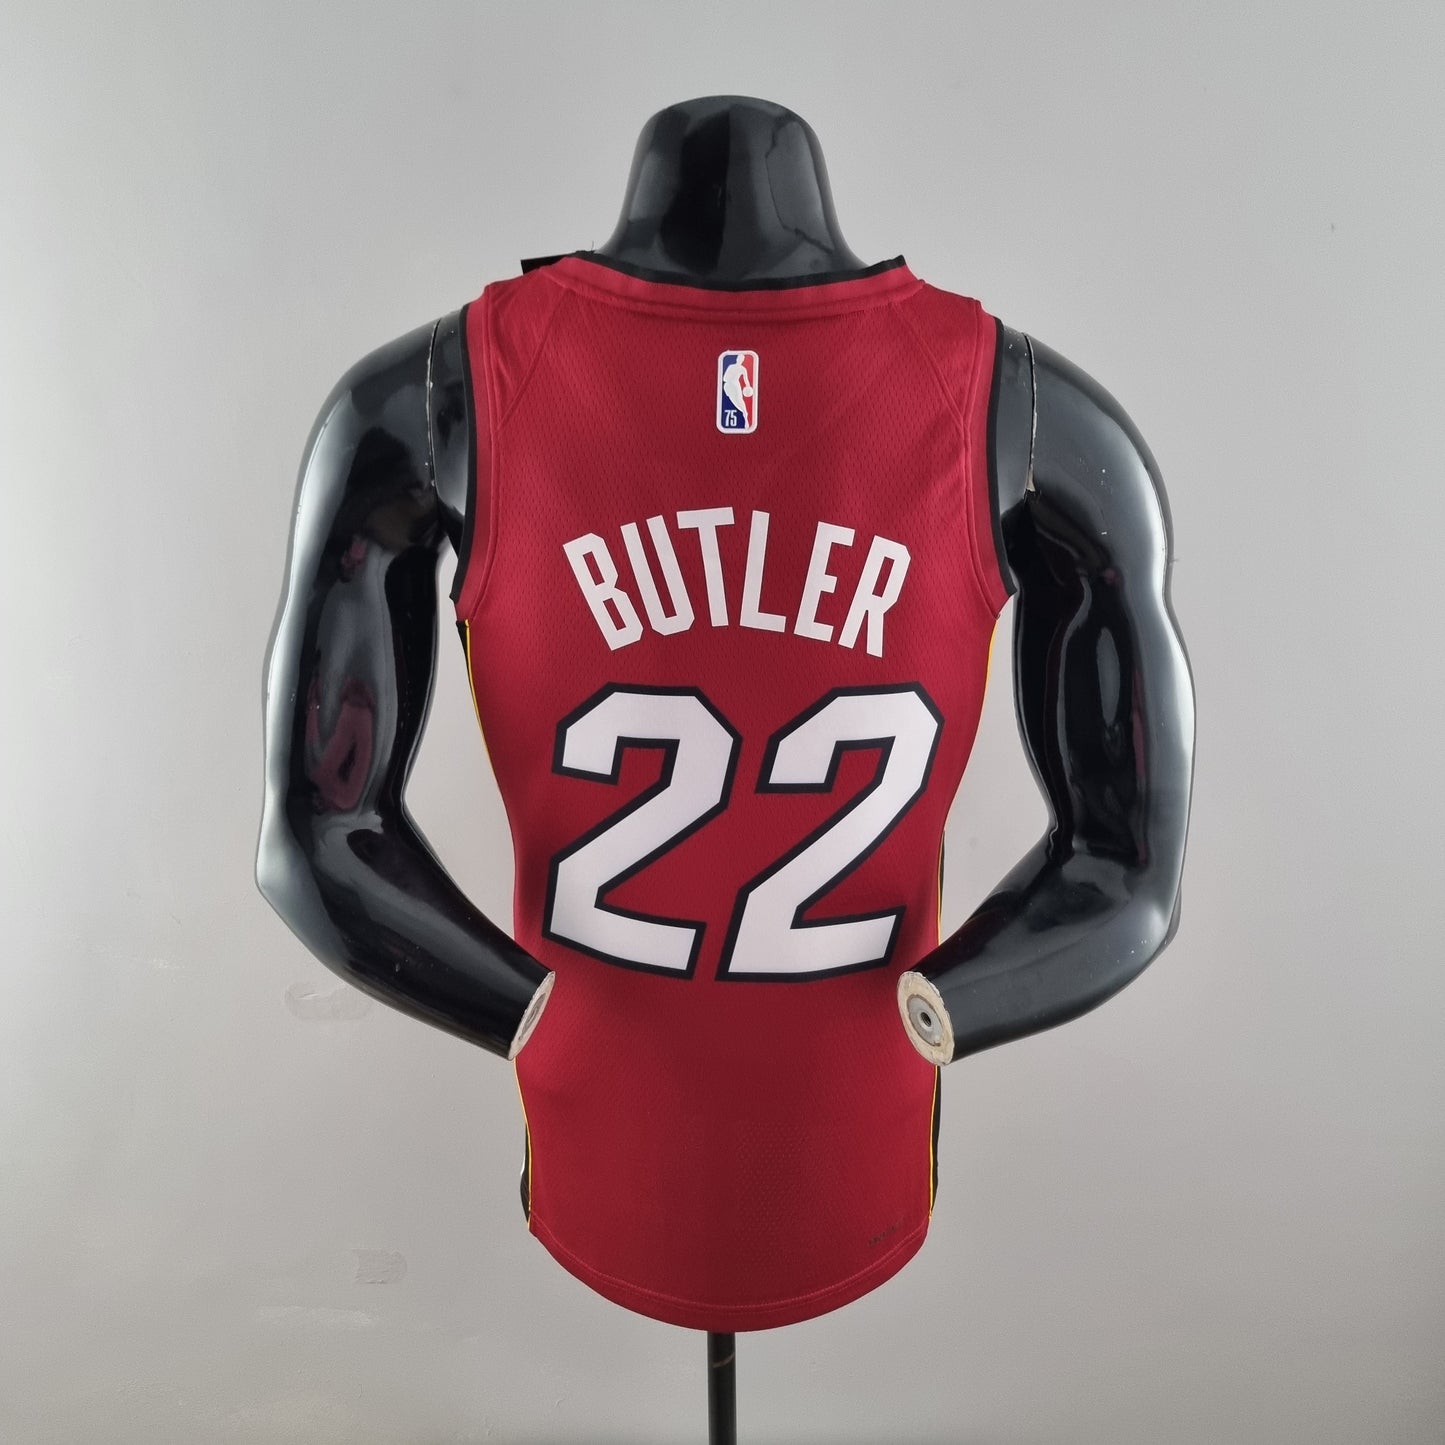 Regata NBA Miami Heat Vermelha - BUTLER #22